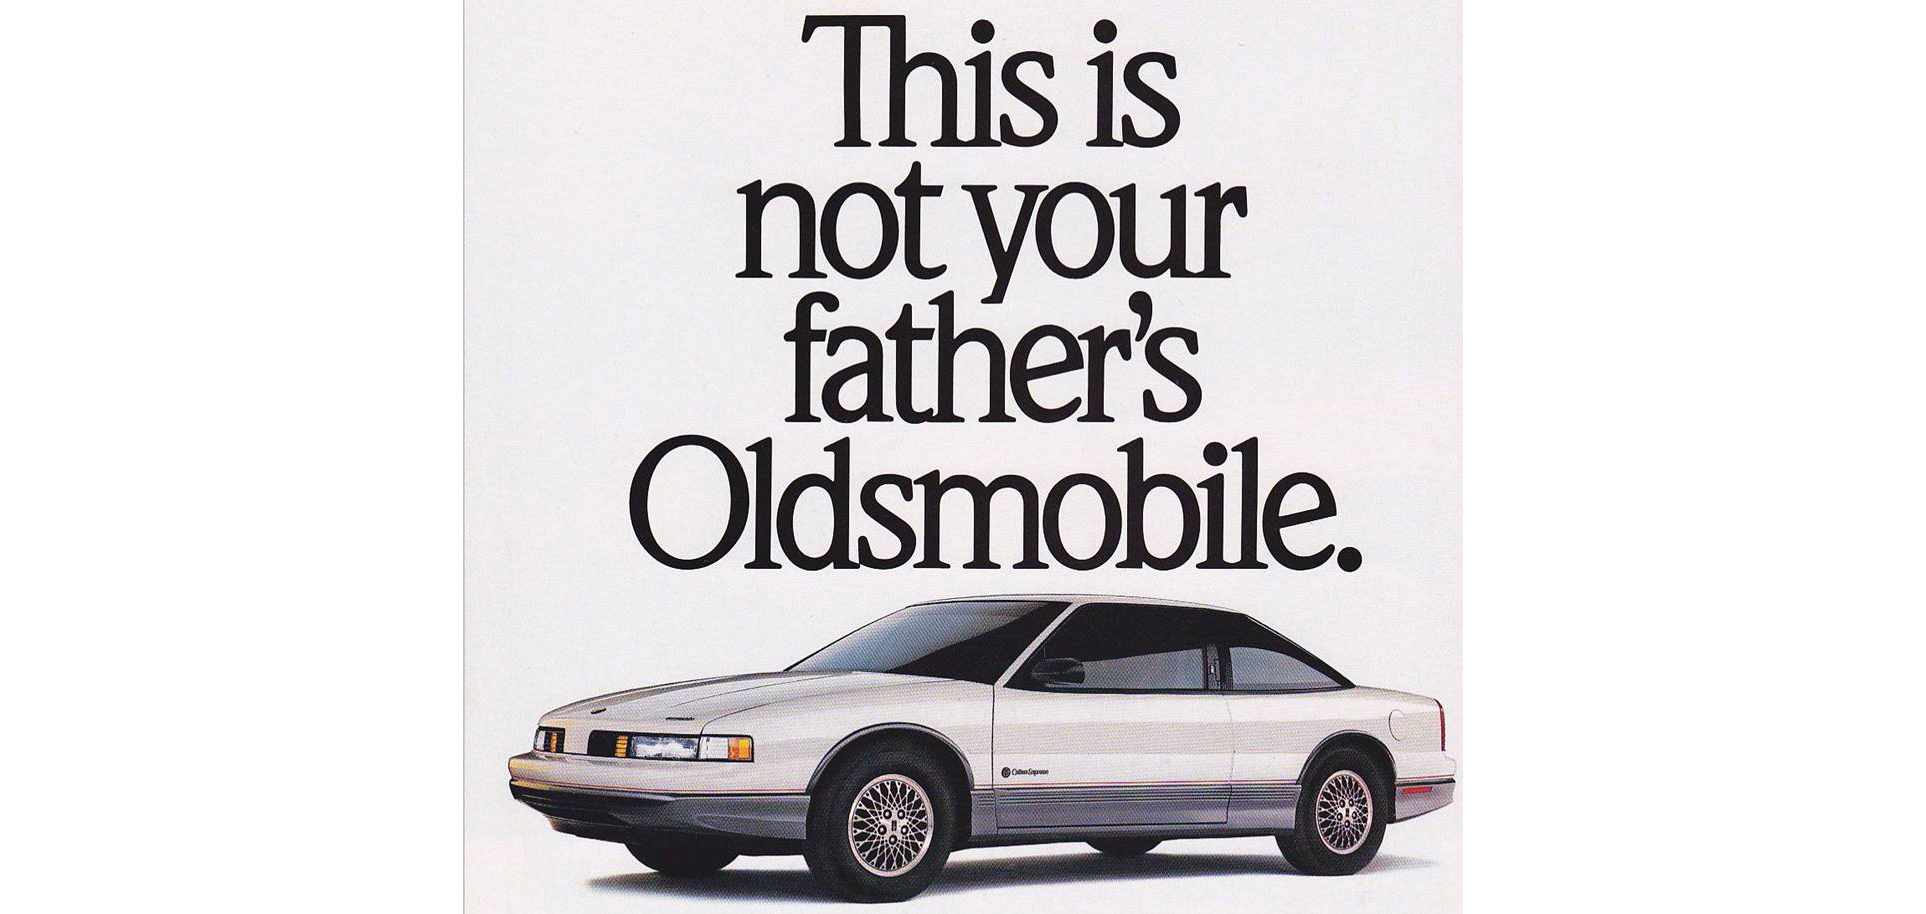 Werbung von General Motors